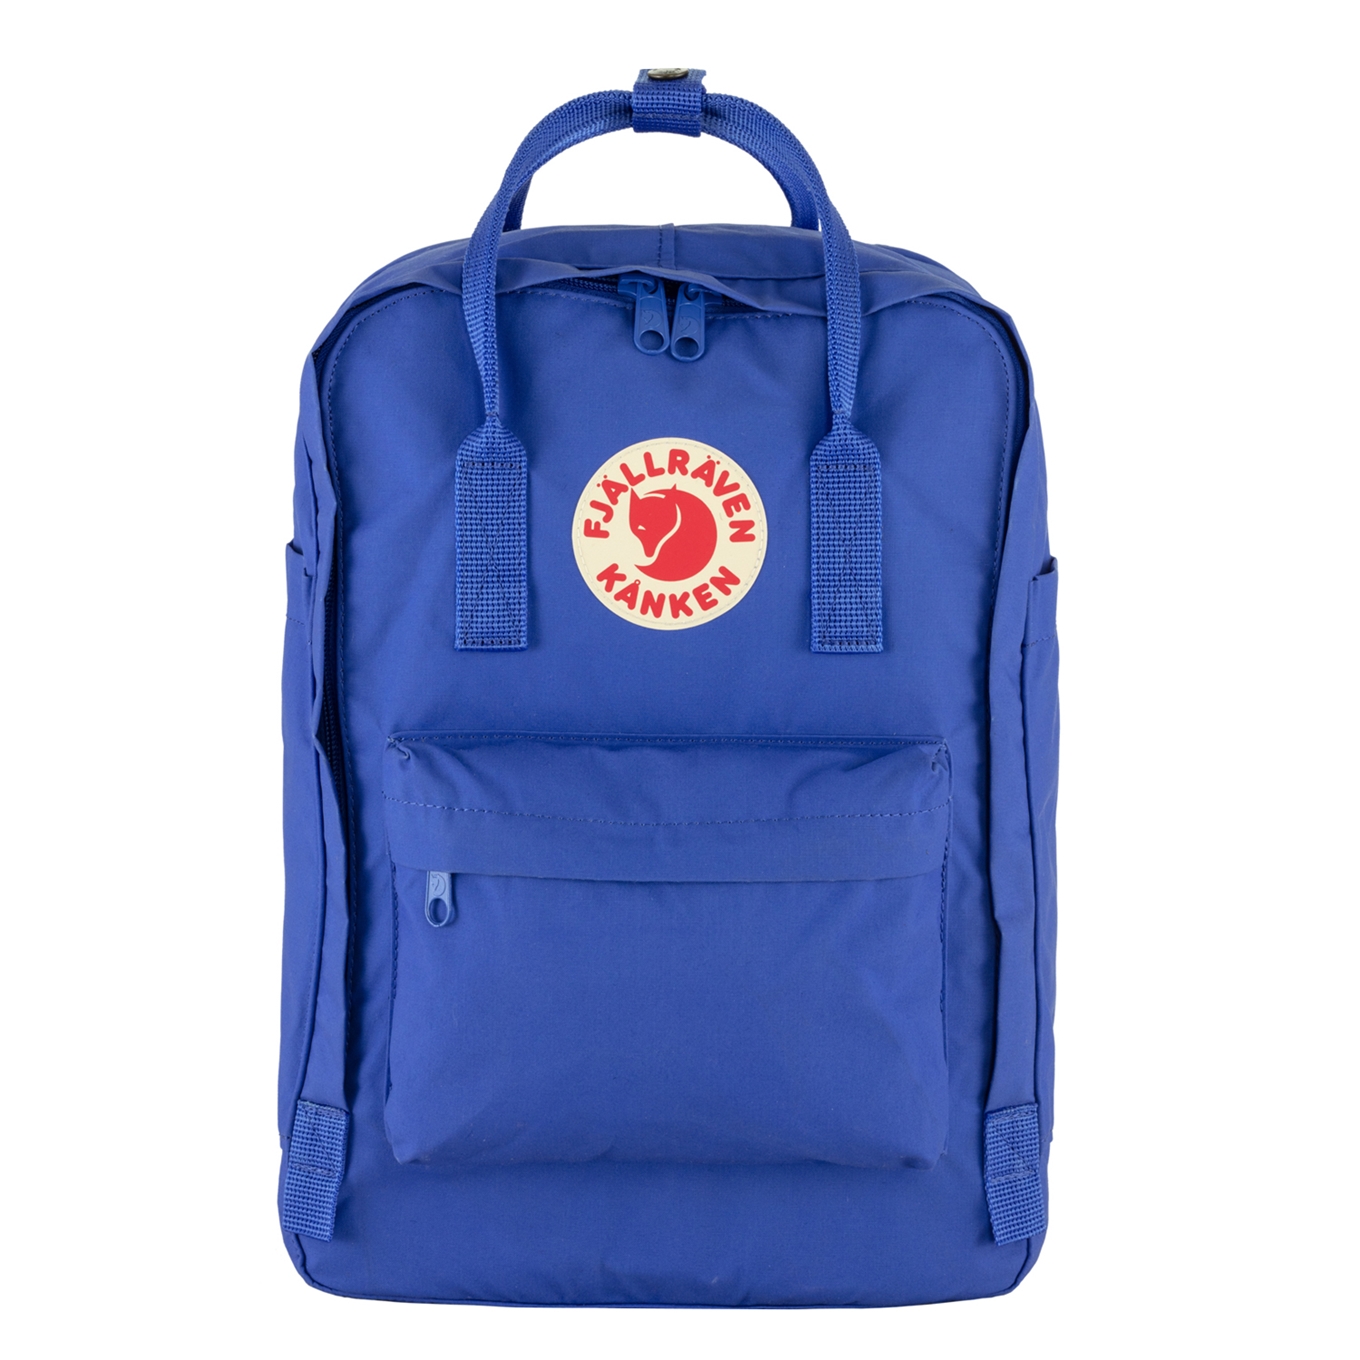 Fjallraven Kanken Laptop 15" cobalt blue backpack